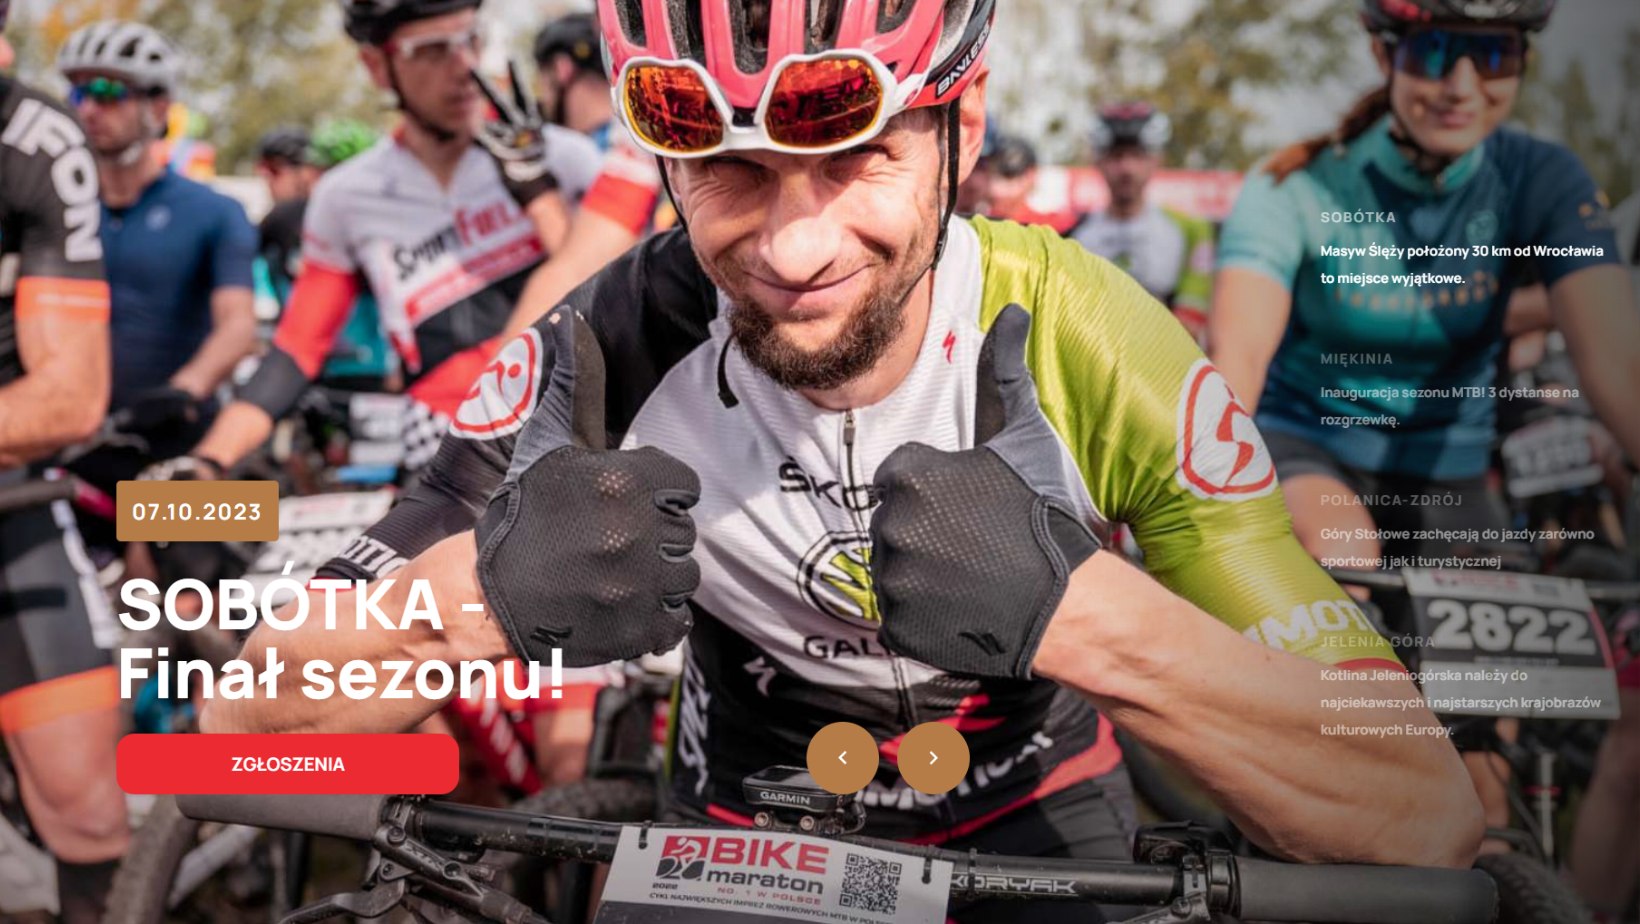 Bike Maraton 2023 - Sobótka - Finał sezonu